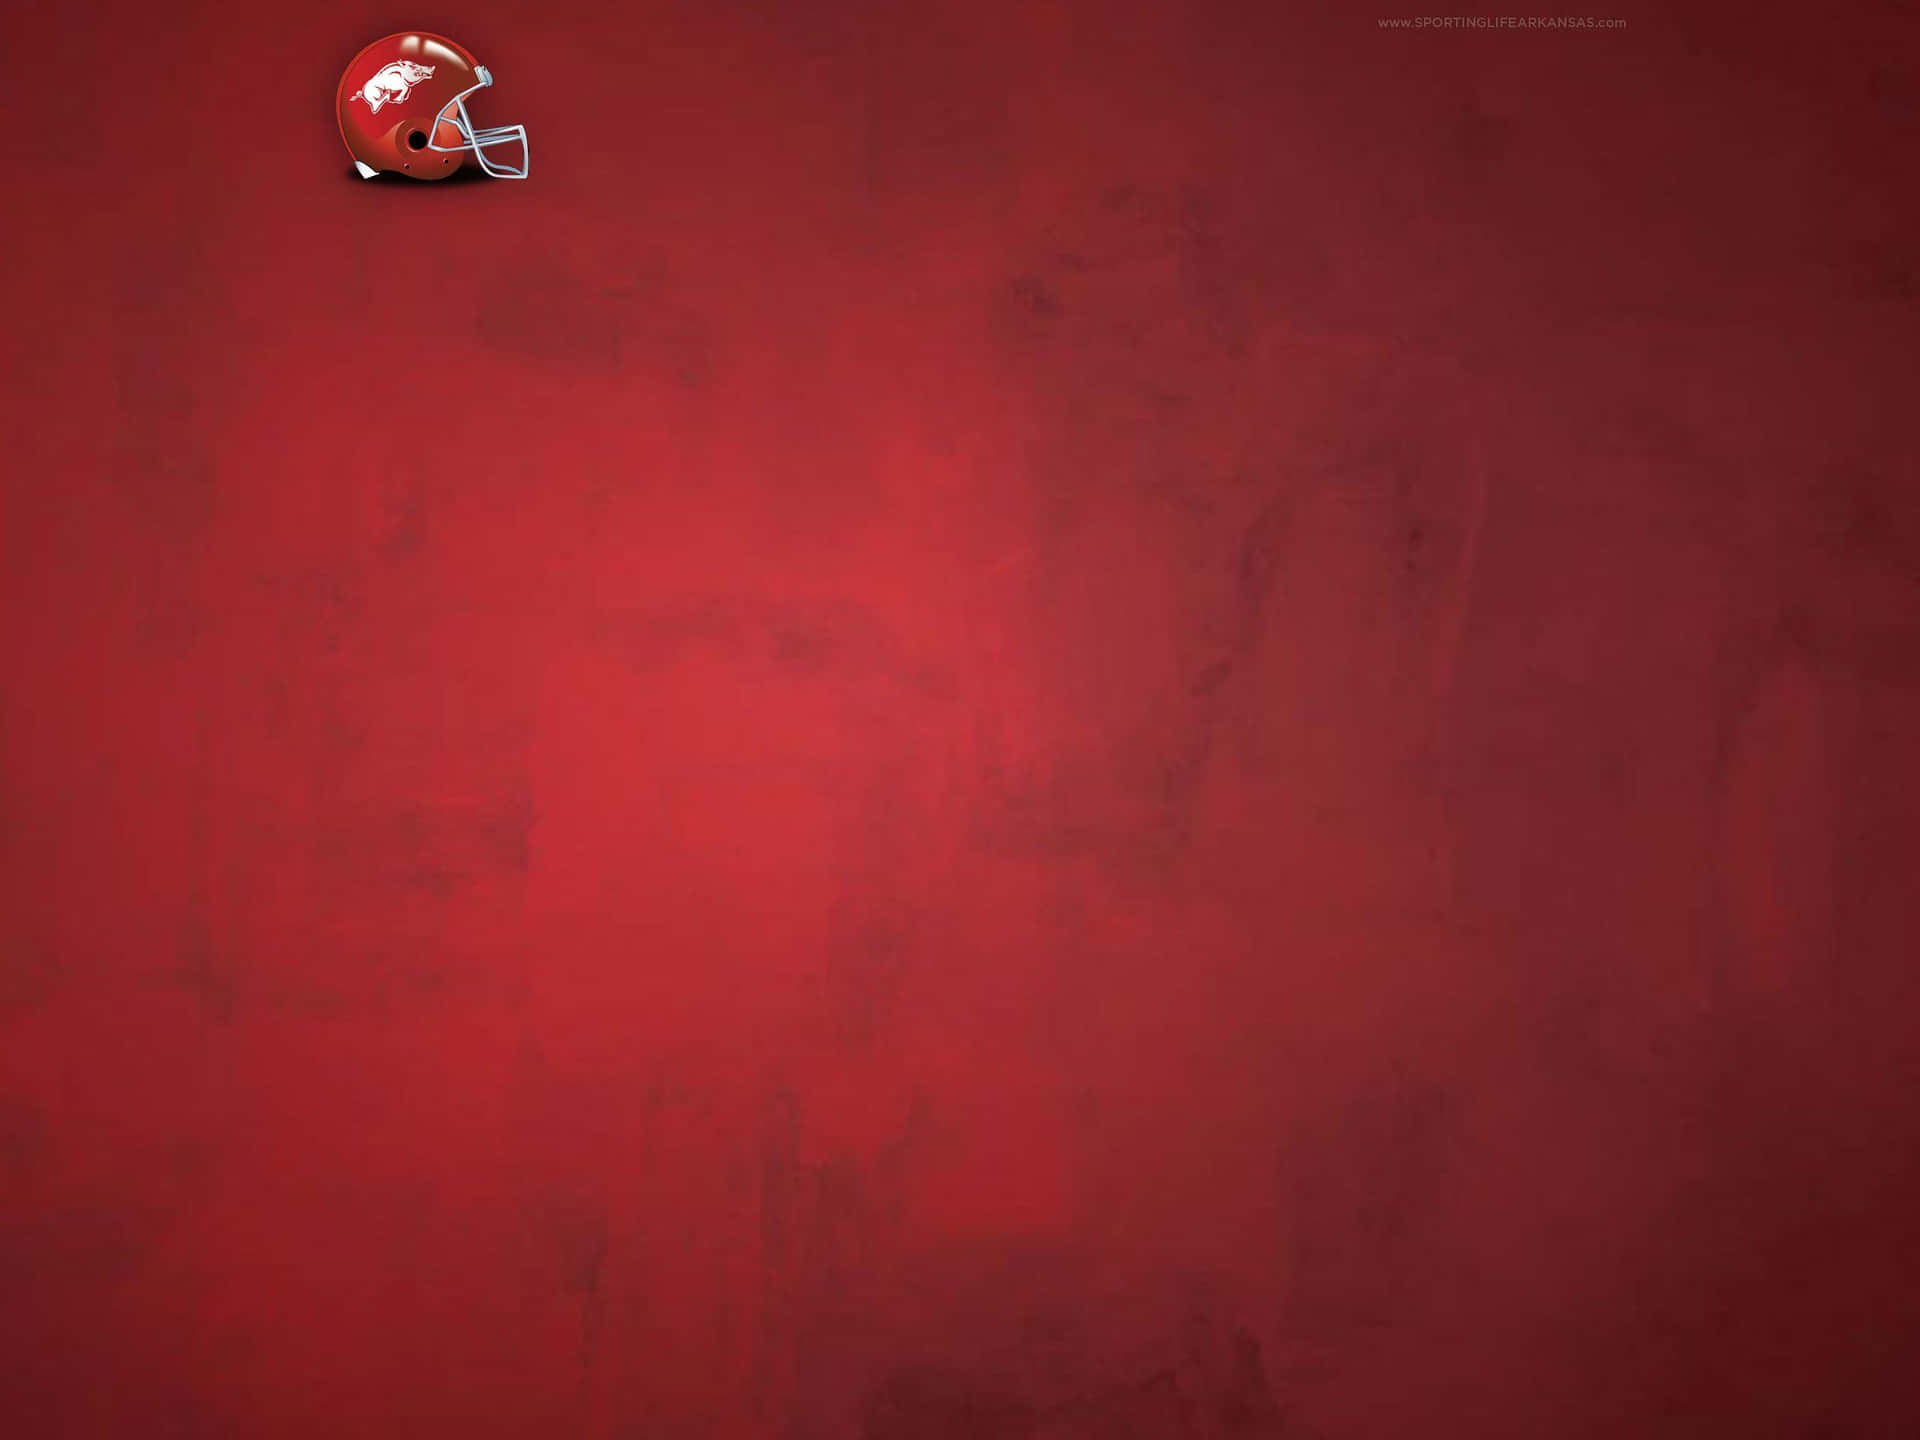 Unfondo Rojo Con Un Casco De Fútbol Americano En Él Fondo de pantalla